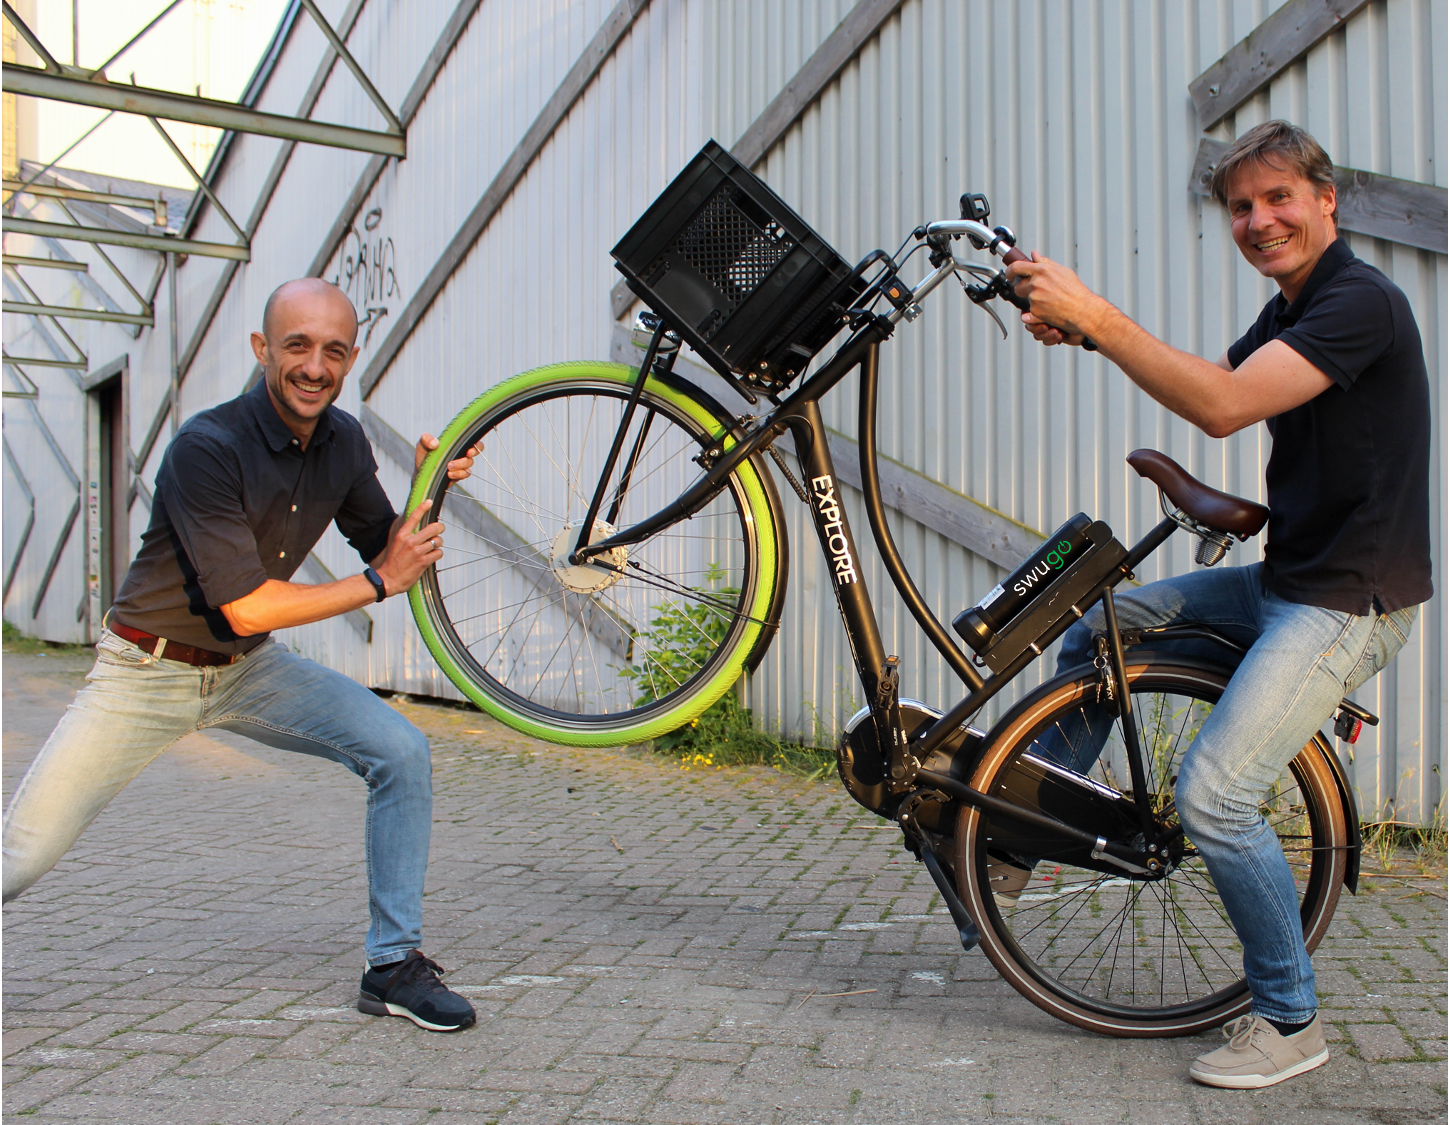 Met de duurzame oplossing van swugo wordt jouw fiets een elektrische fiets 